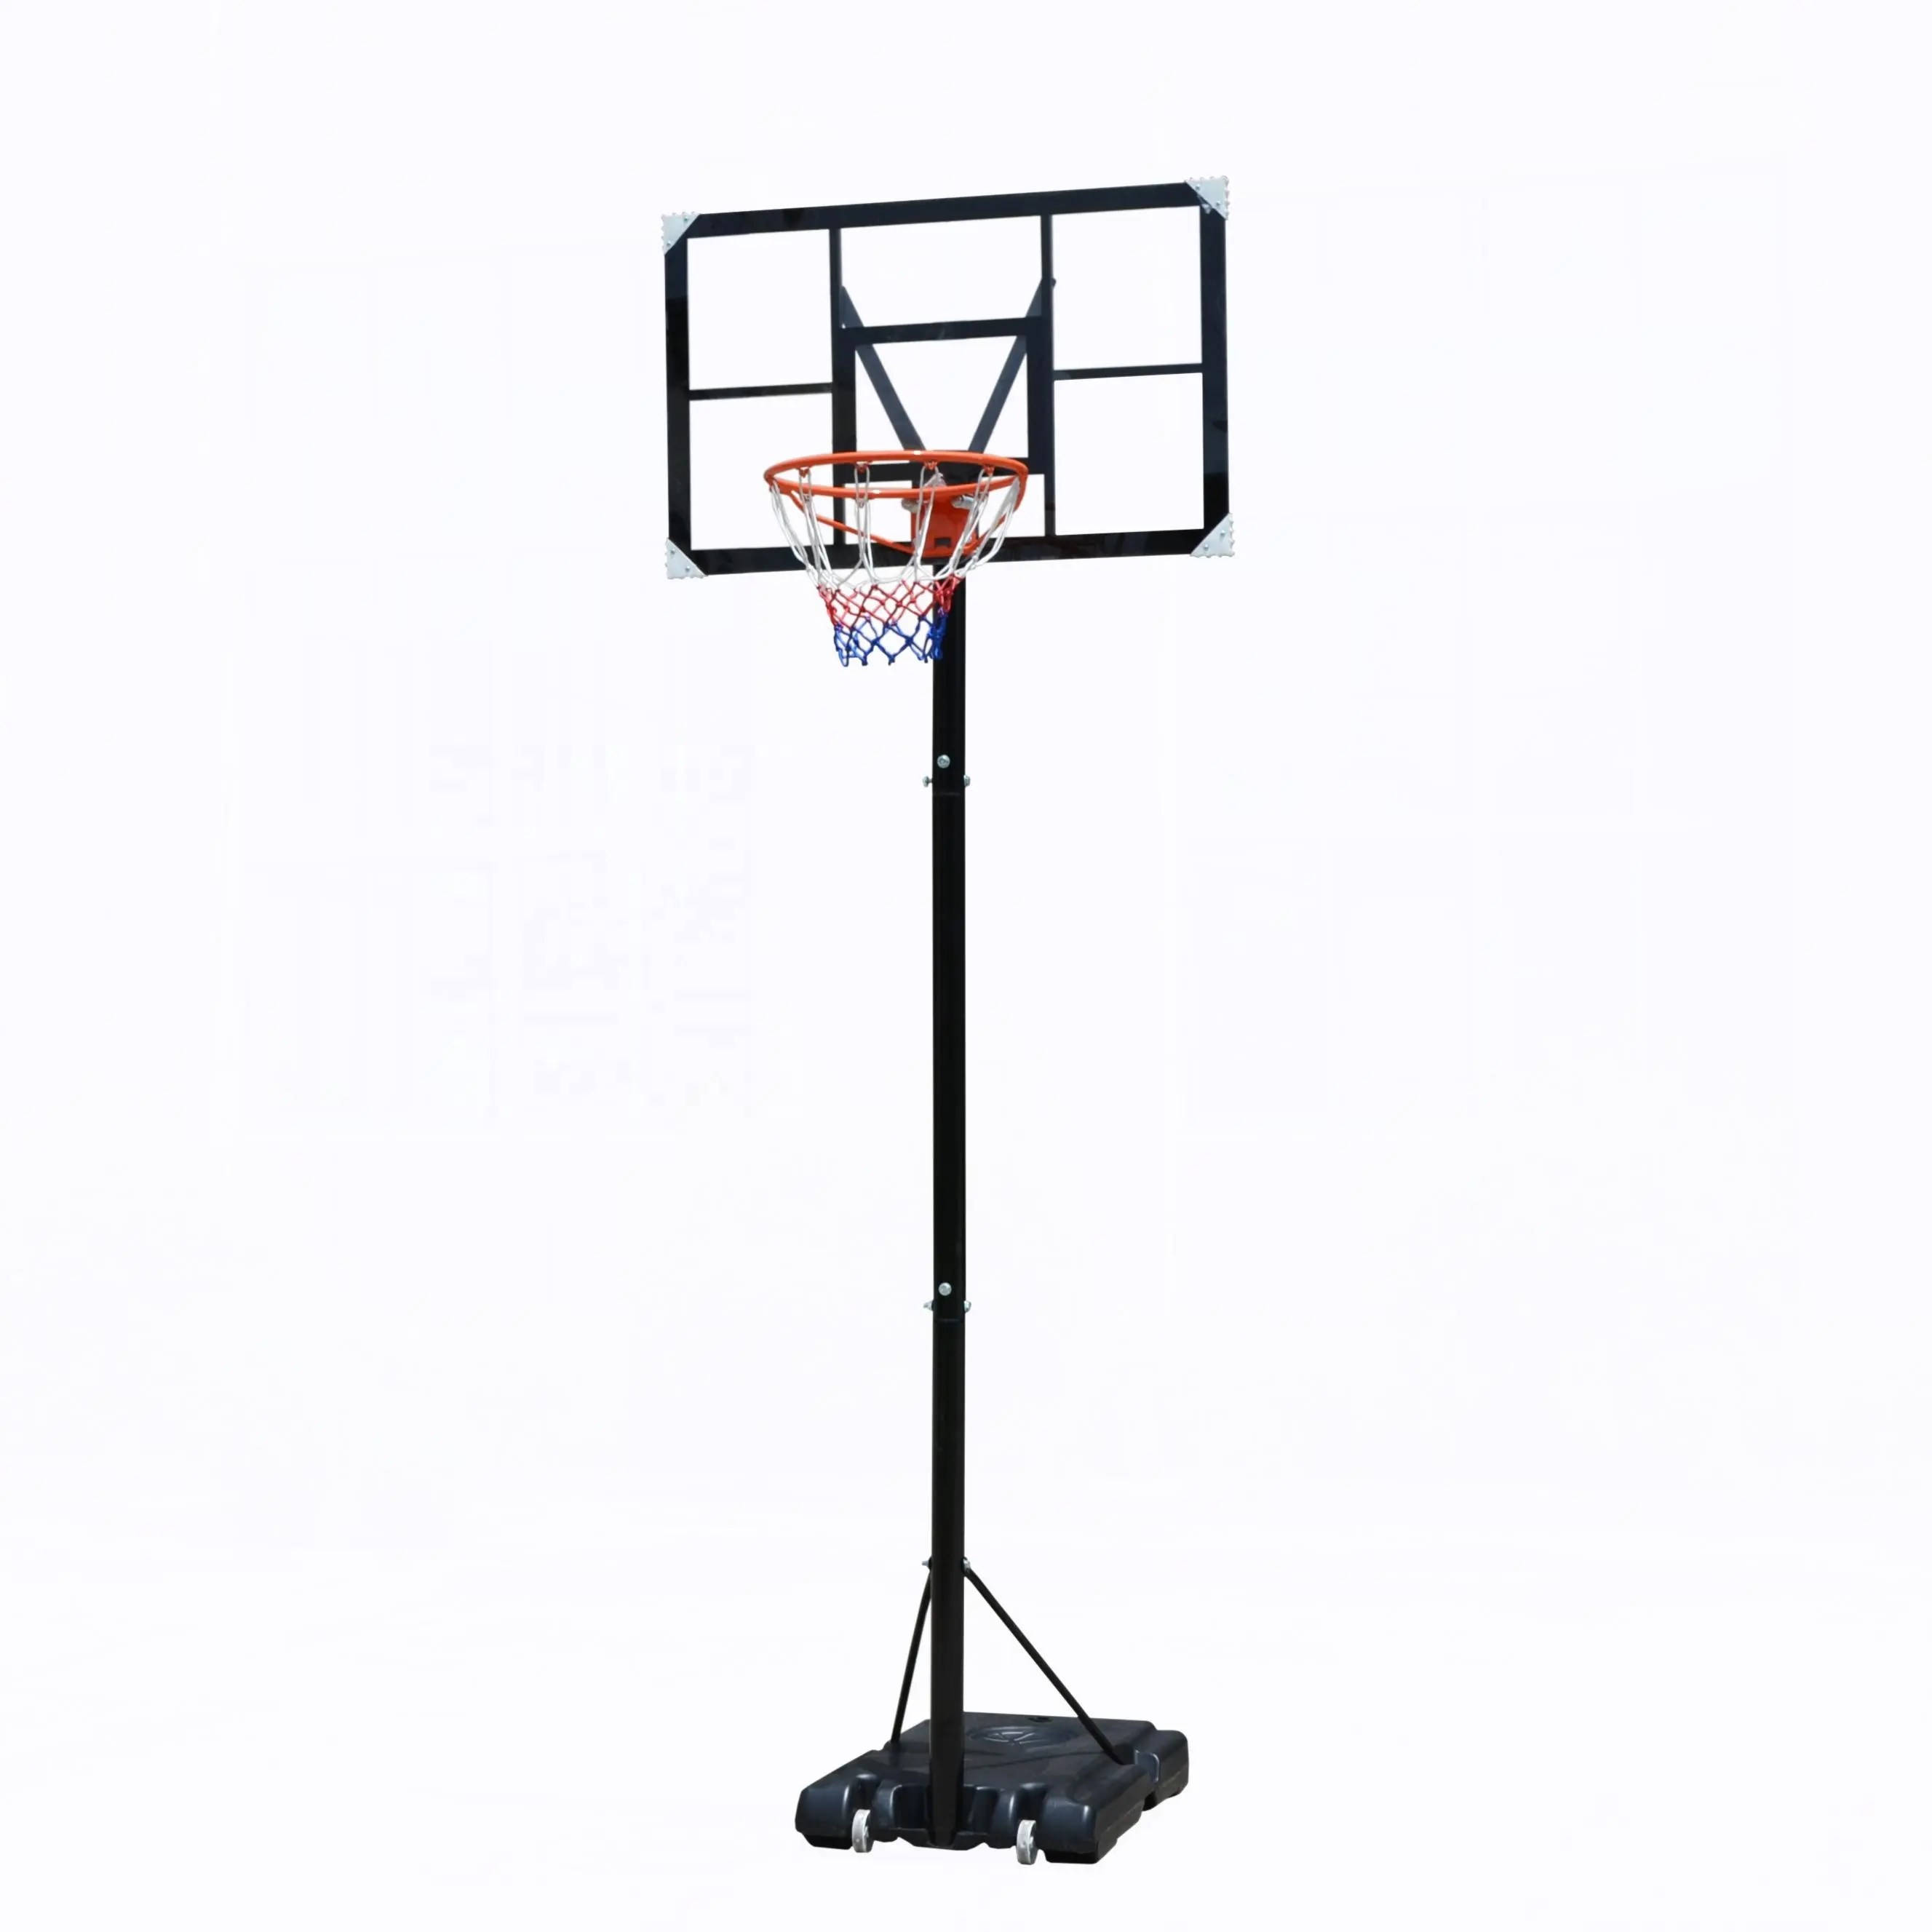 Approvisionnement d'usine de haute qualité en plein air Portable basket-ball cerceau jeunesse basket-ball championnat anneaux